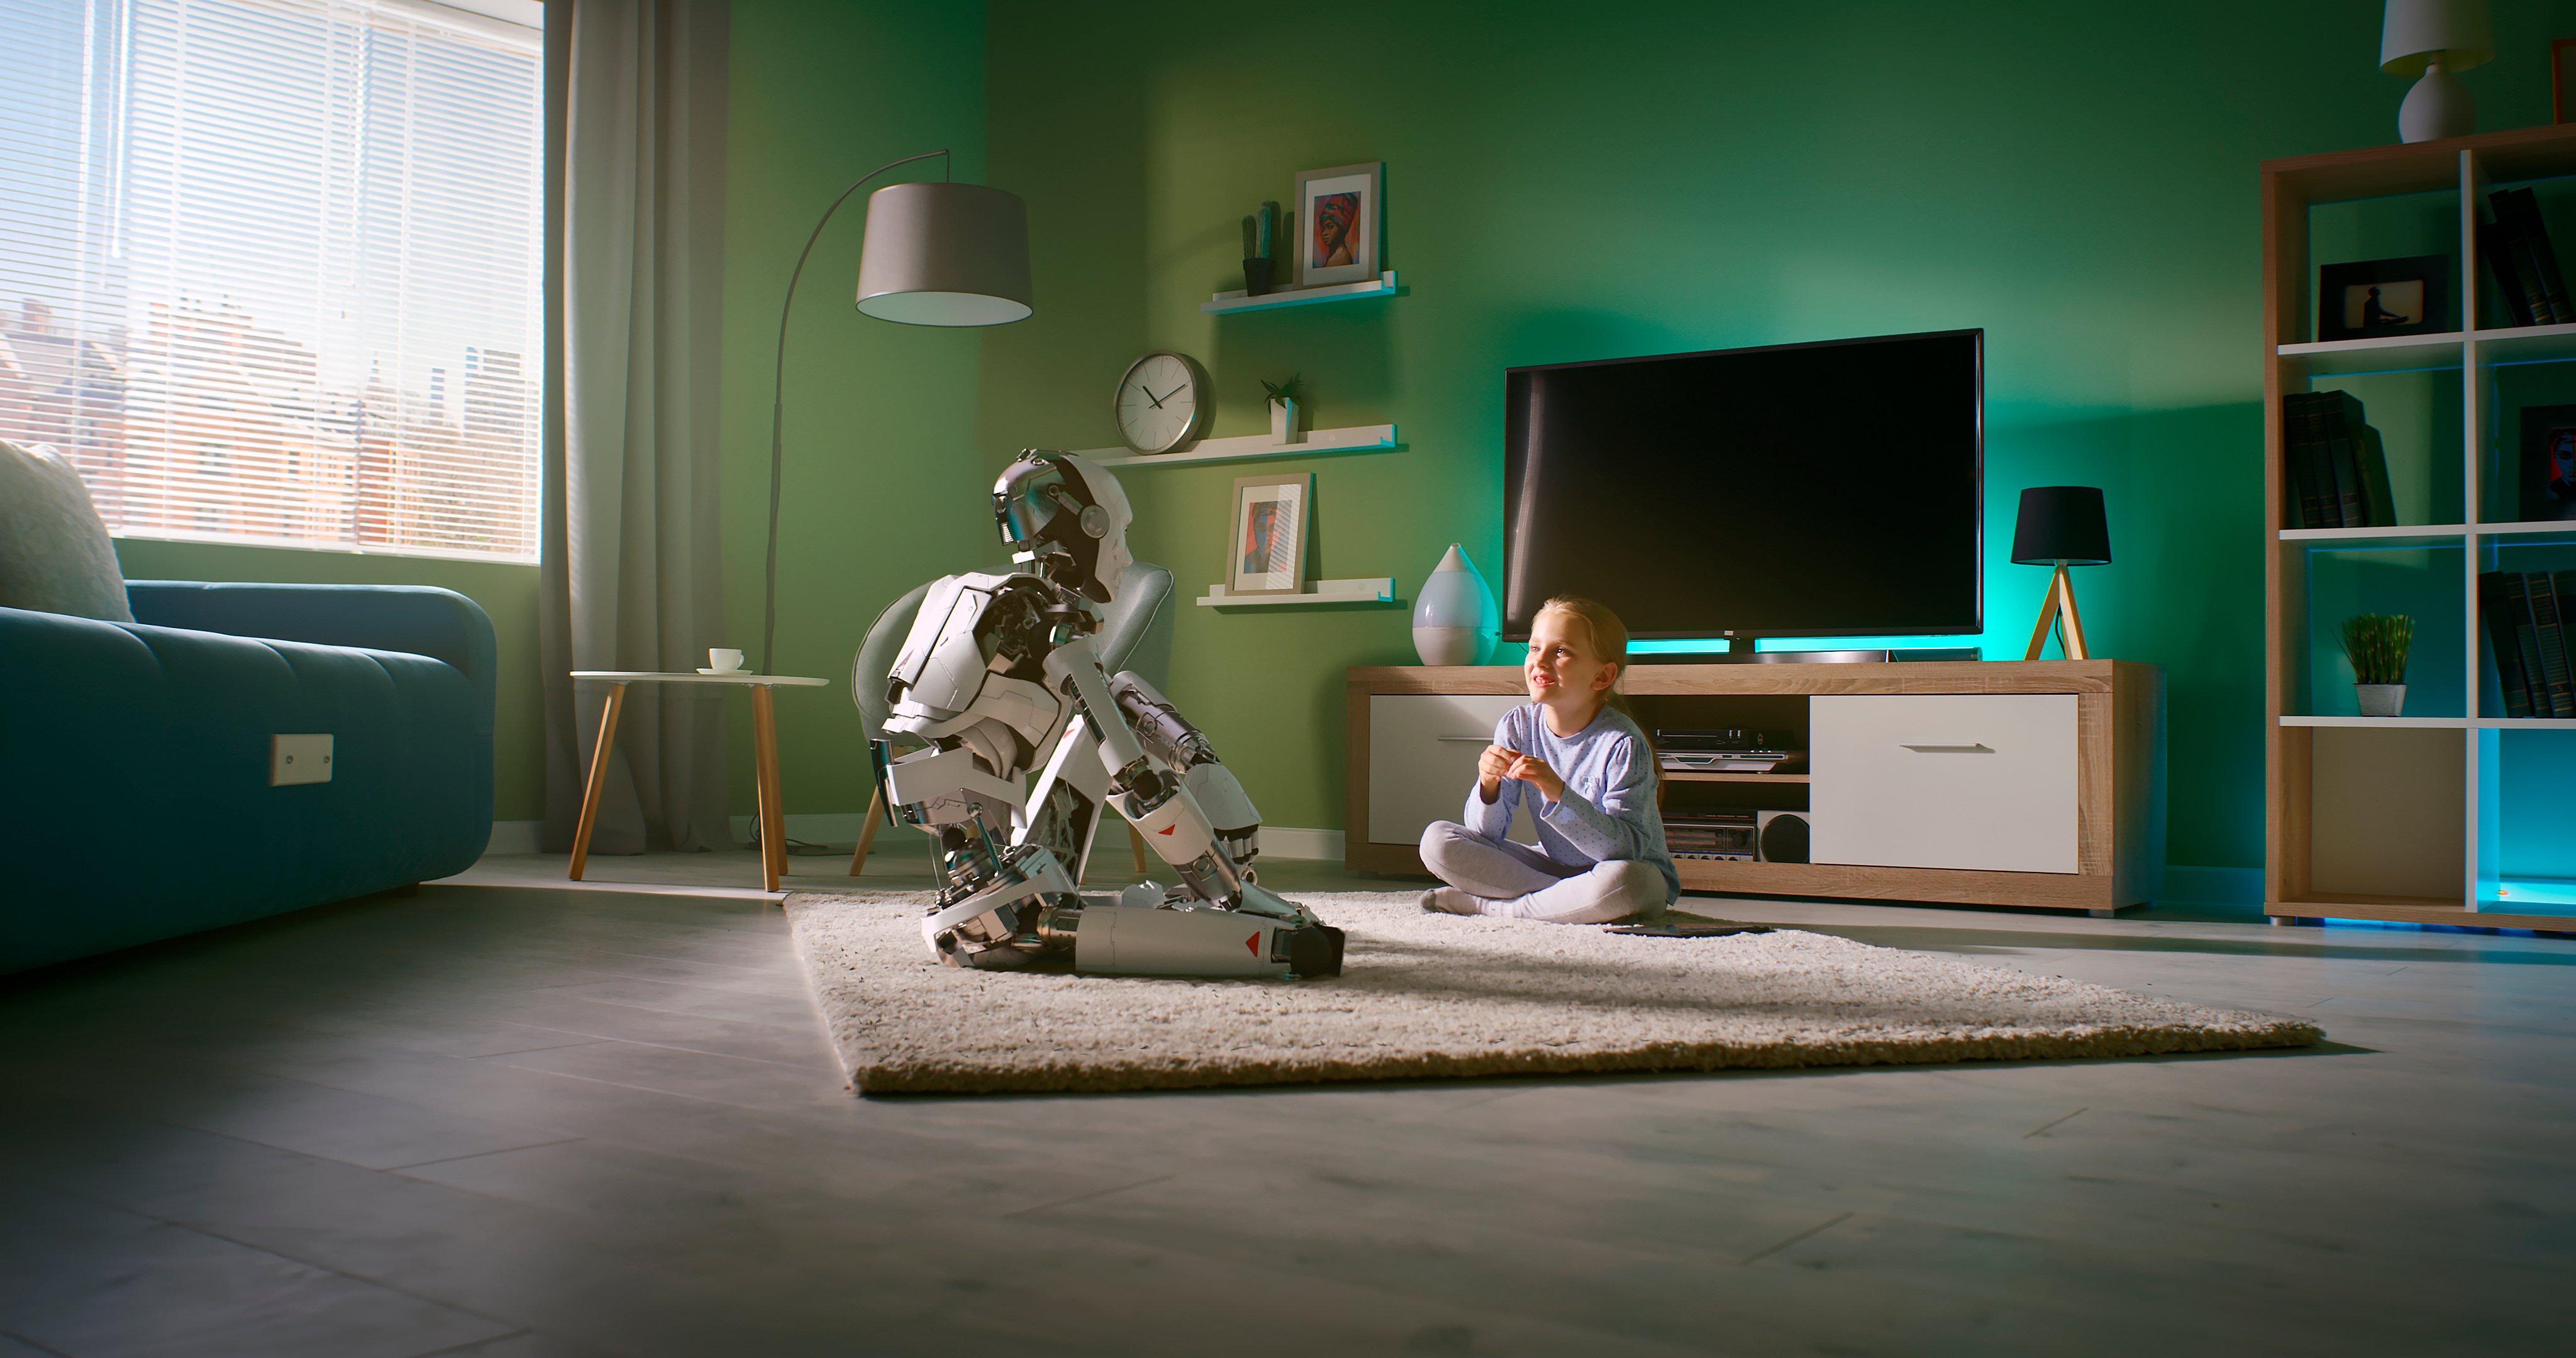 Zoom auf ein Mädchen, das auf einem Teppich in der Nähe eines Fernsehers sitzt und sich mit einem Androiden unterhält